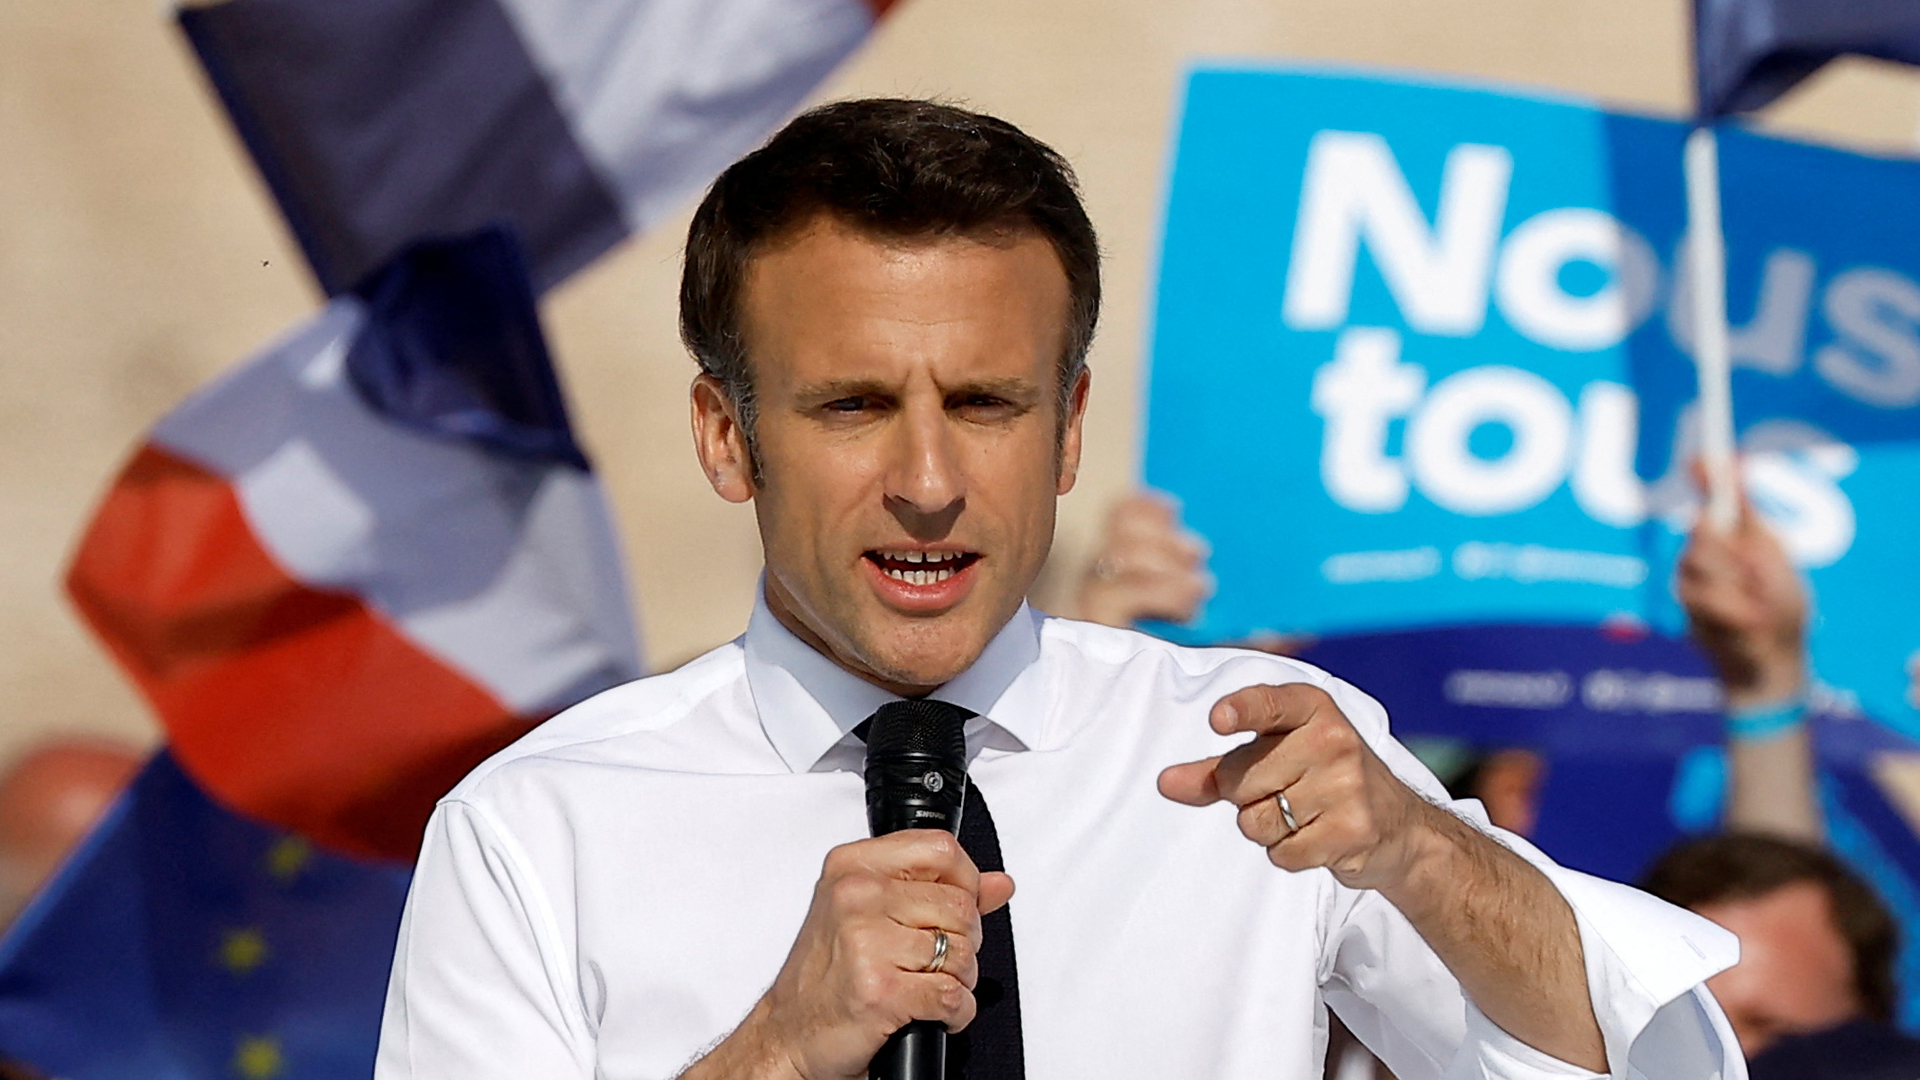 Finanzmärkte hoffen auf Macron-Sieg bei Präsidentenwahl